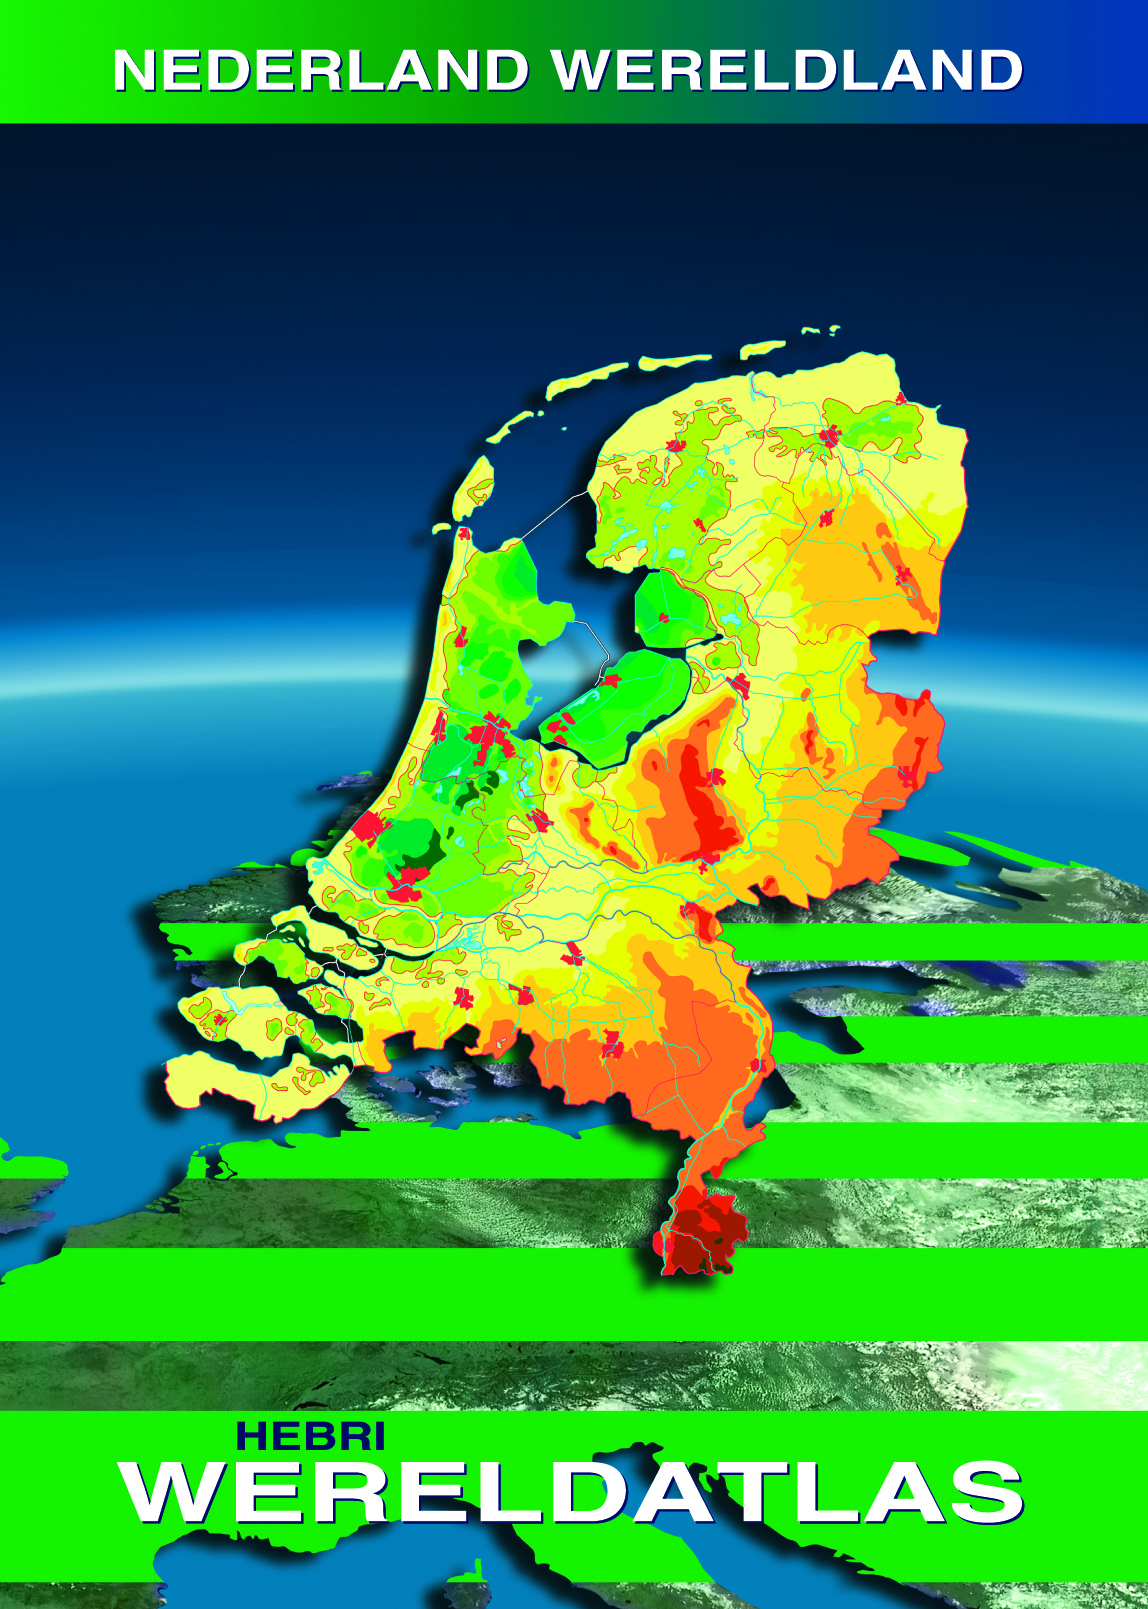 Omslag Nederland Wereldland2.jpg